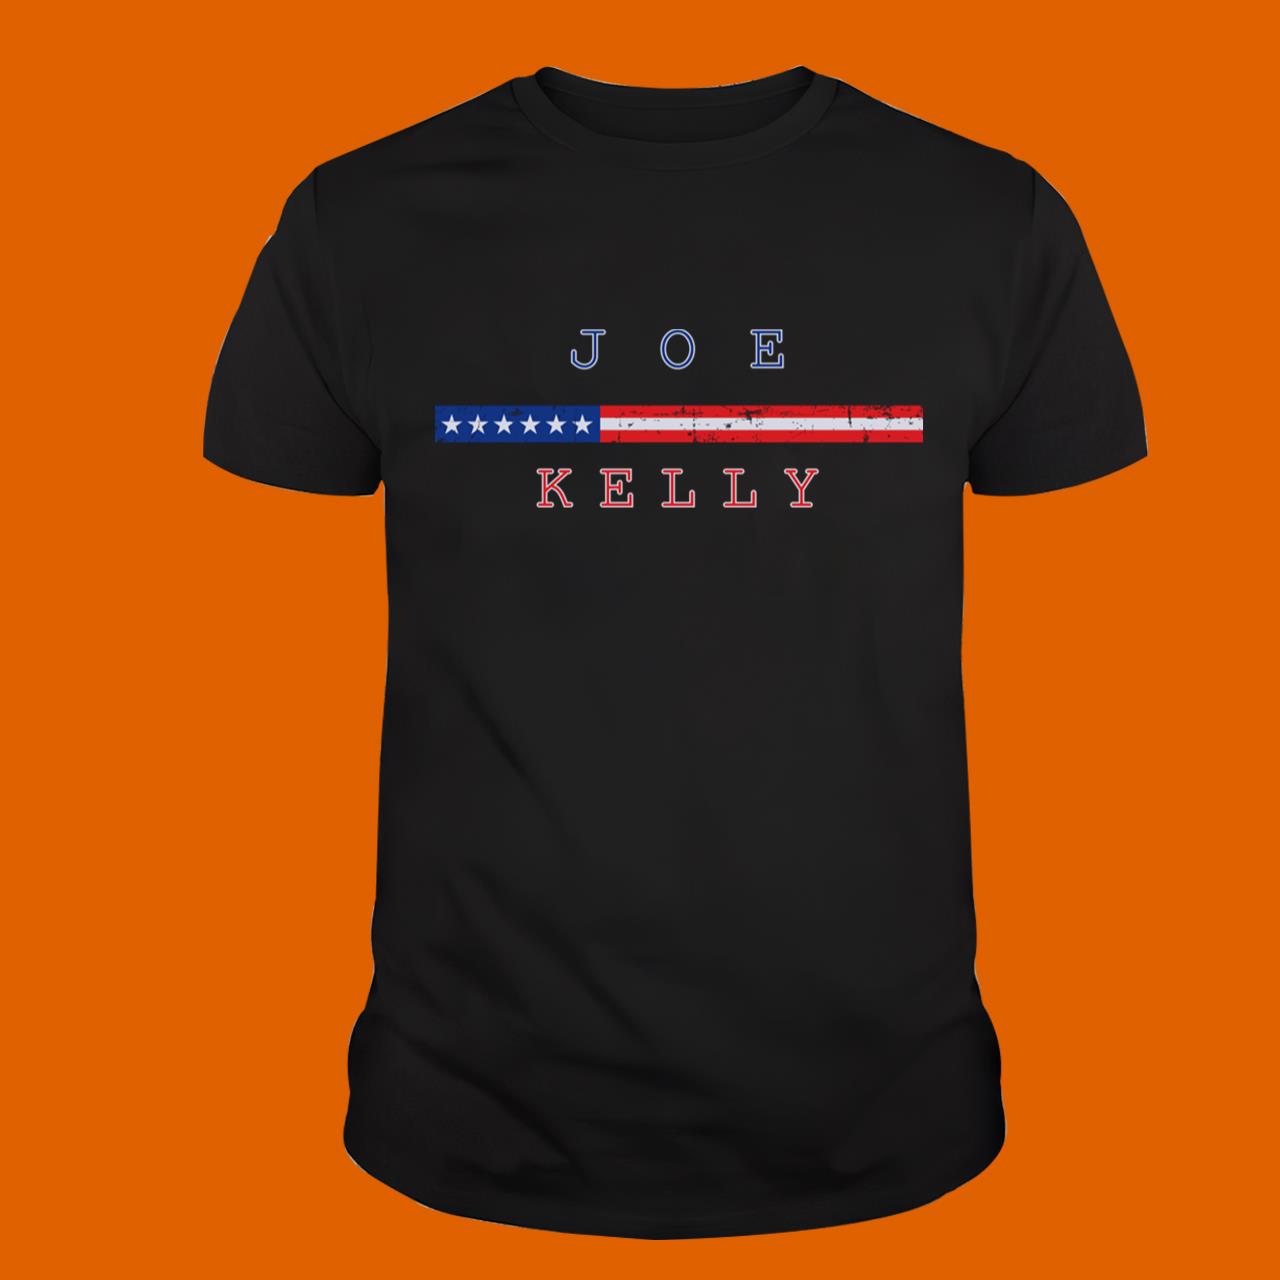 Joe Kelly T-Shirt